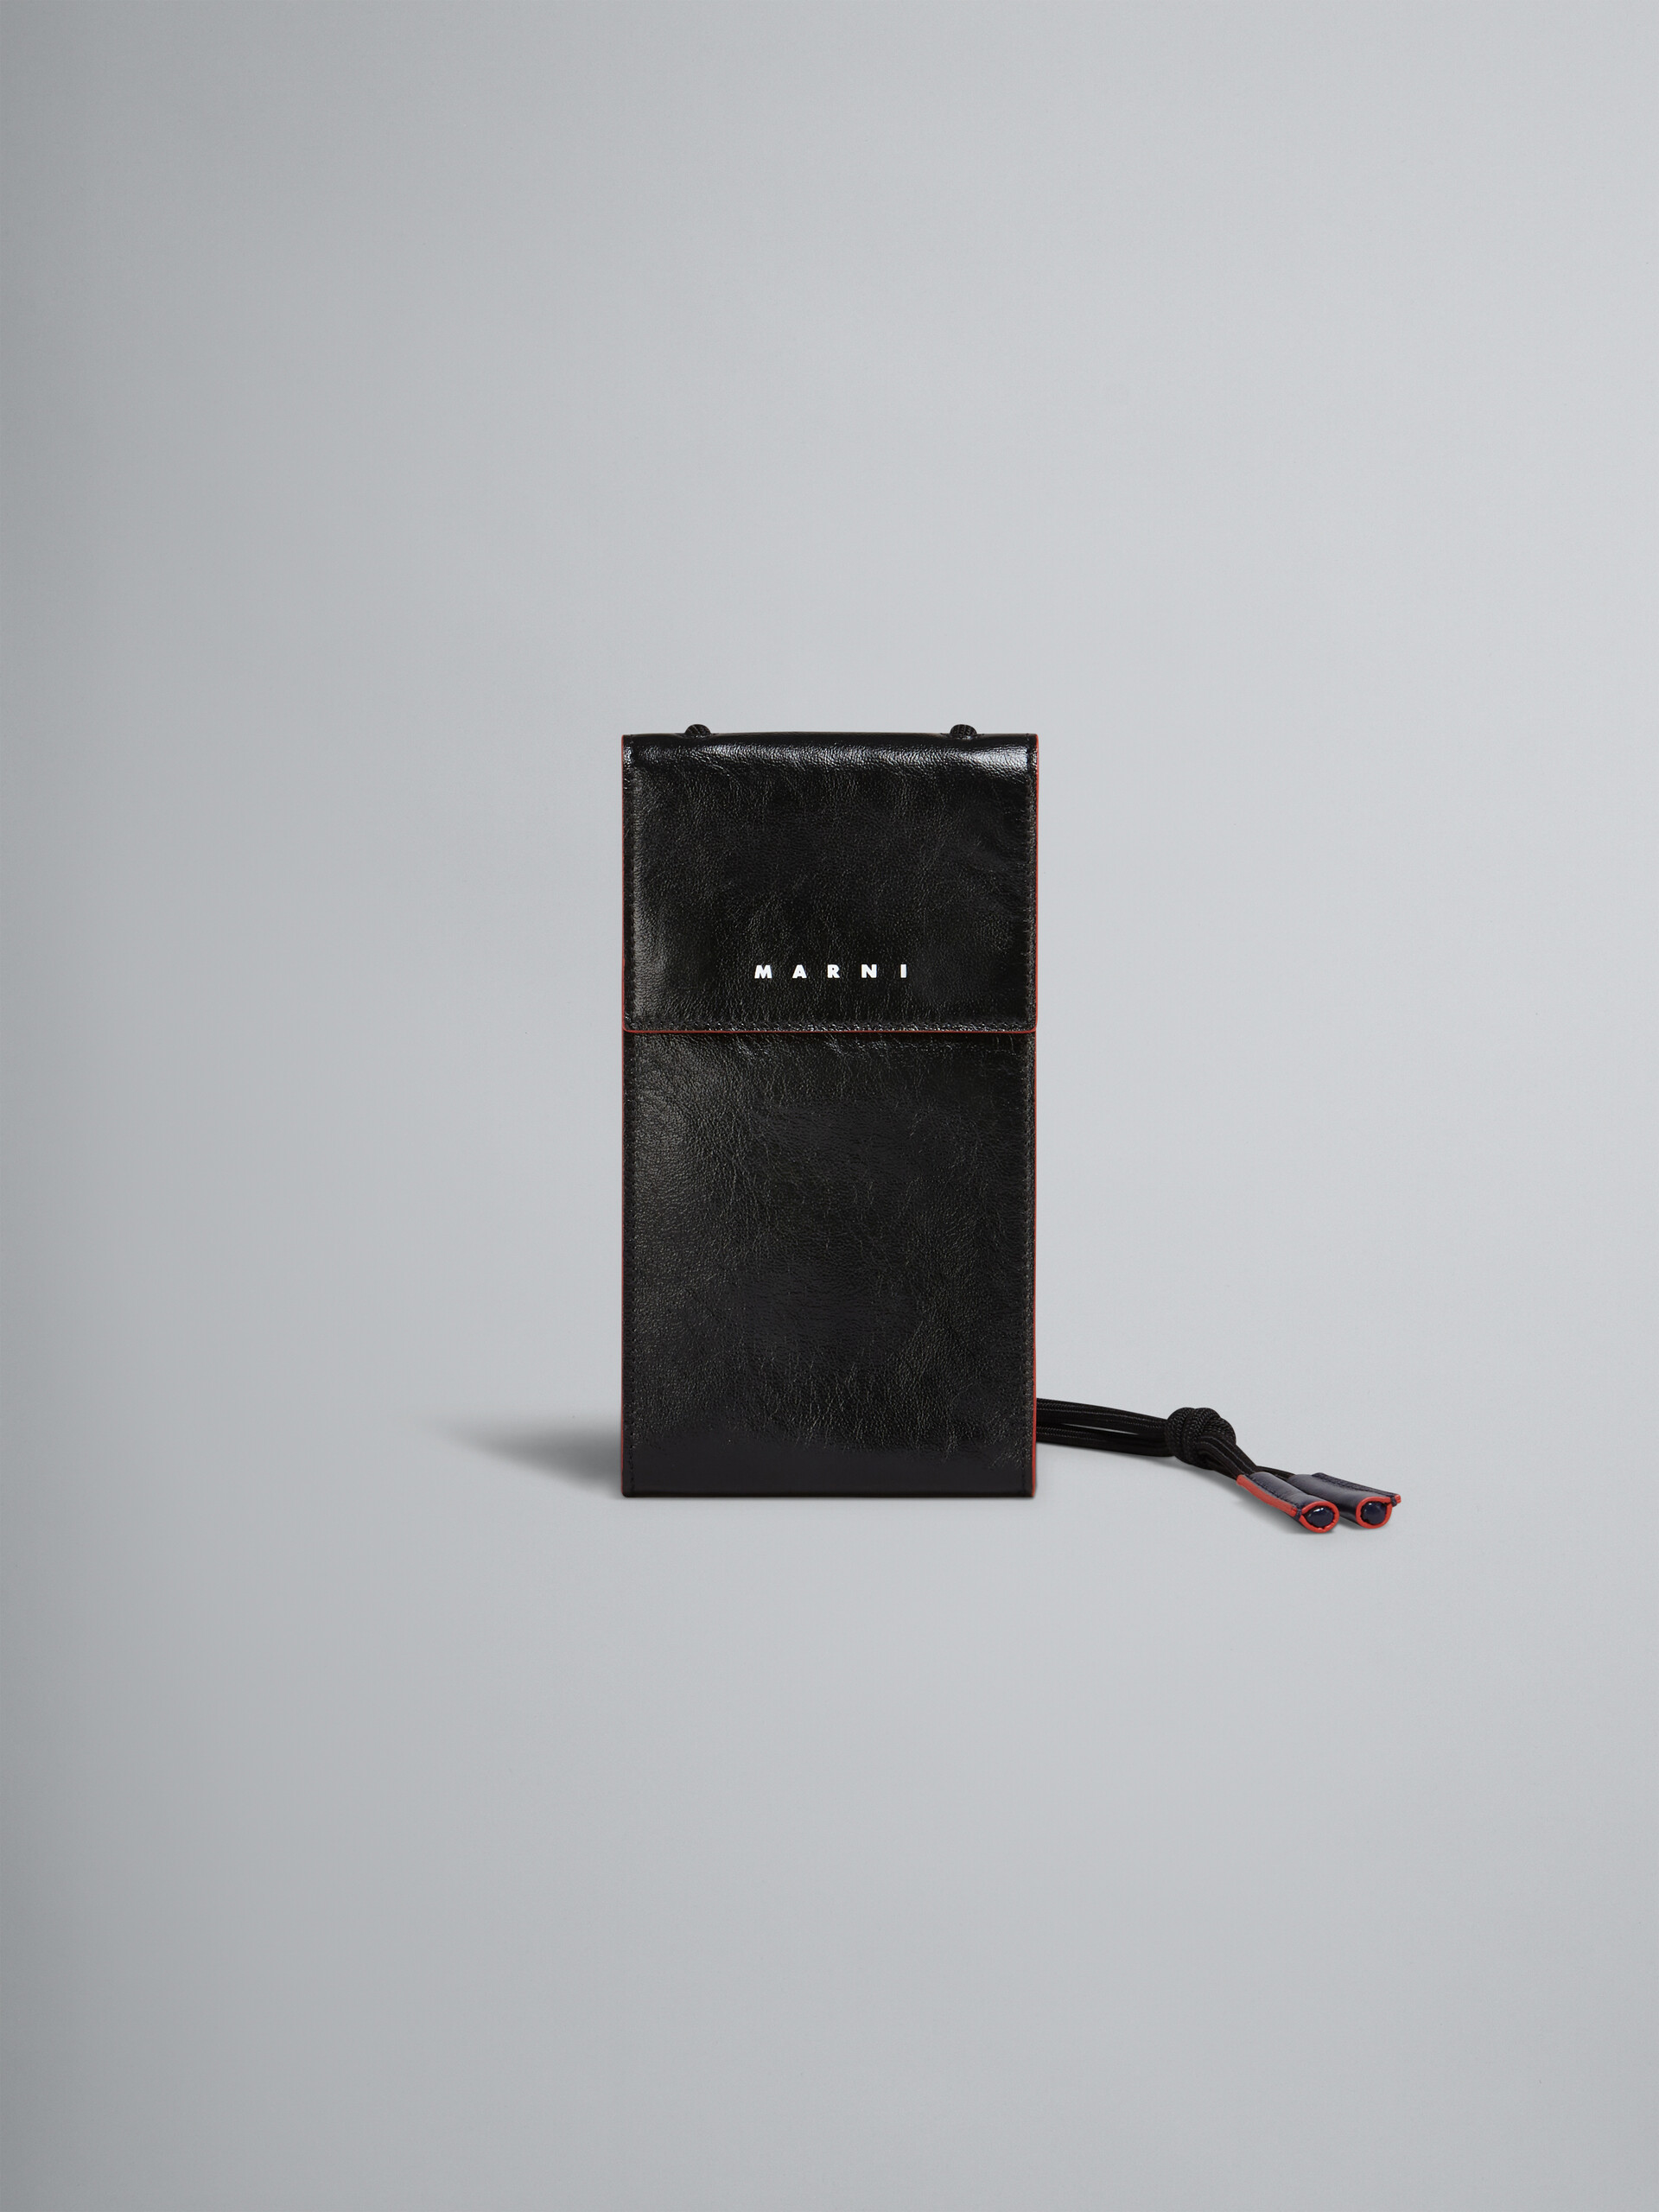 Black shiny leather phone case